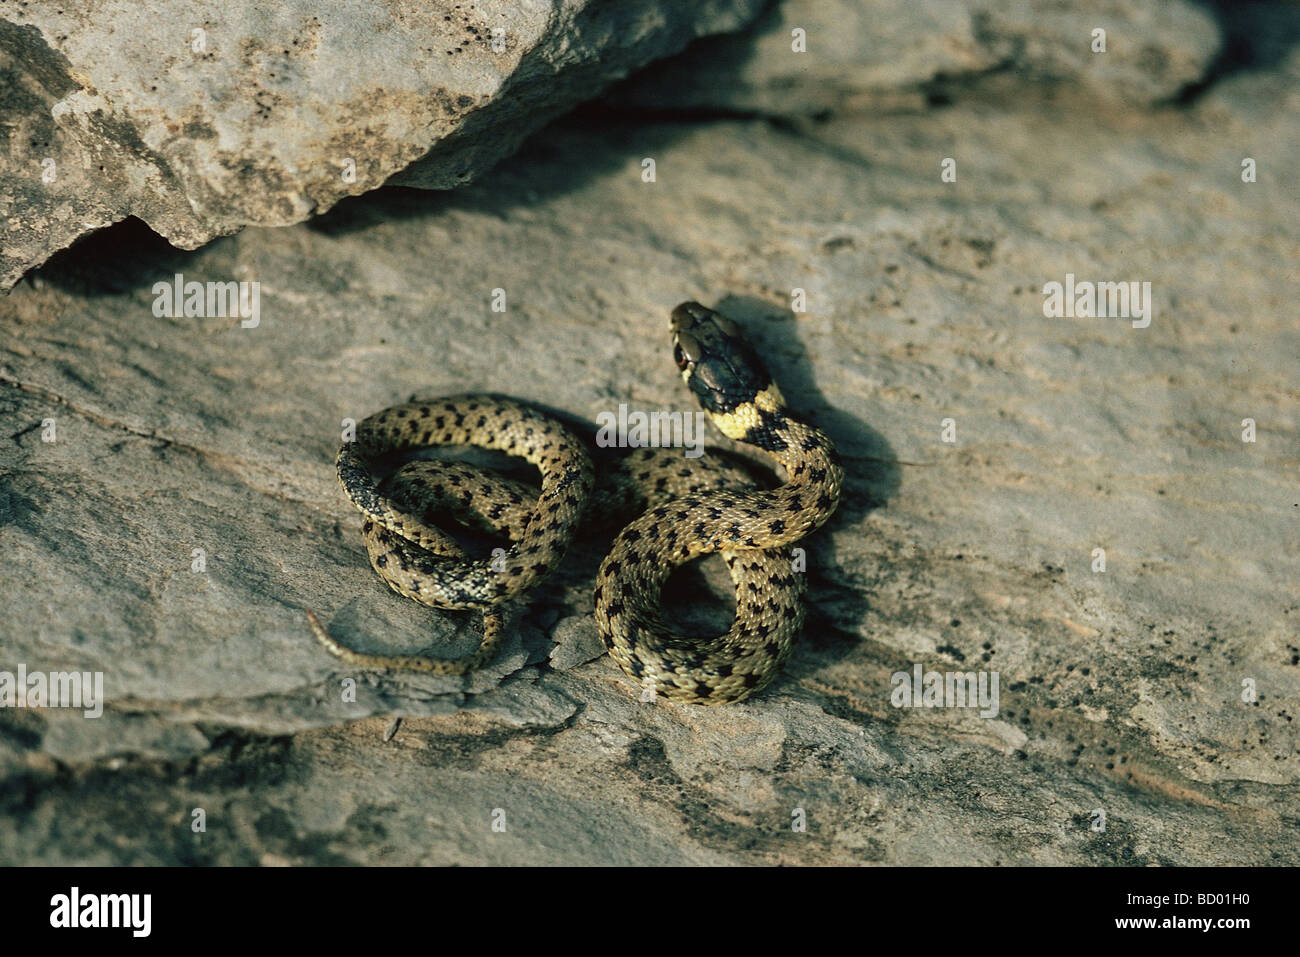 Aesculapian snake / Elaphe longissima Stock Photo